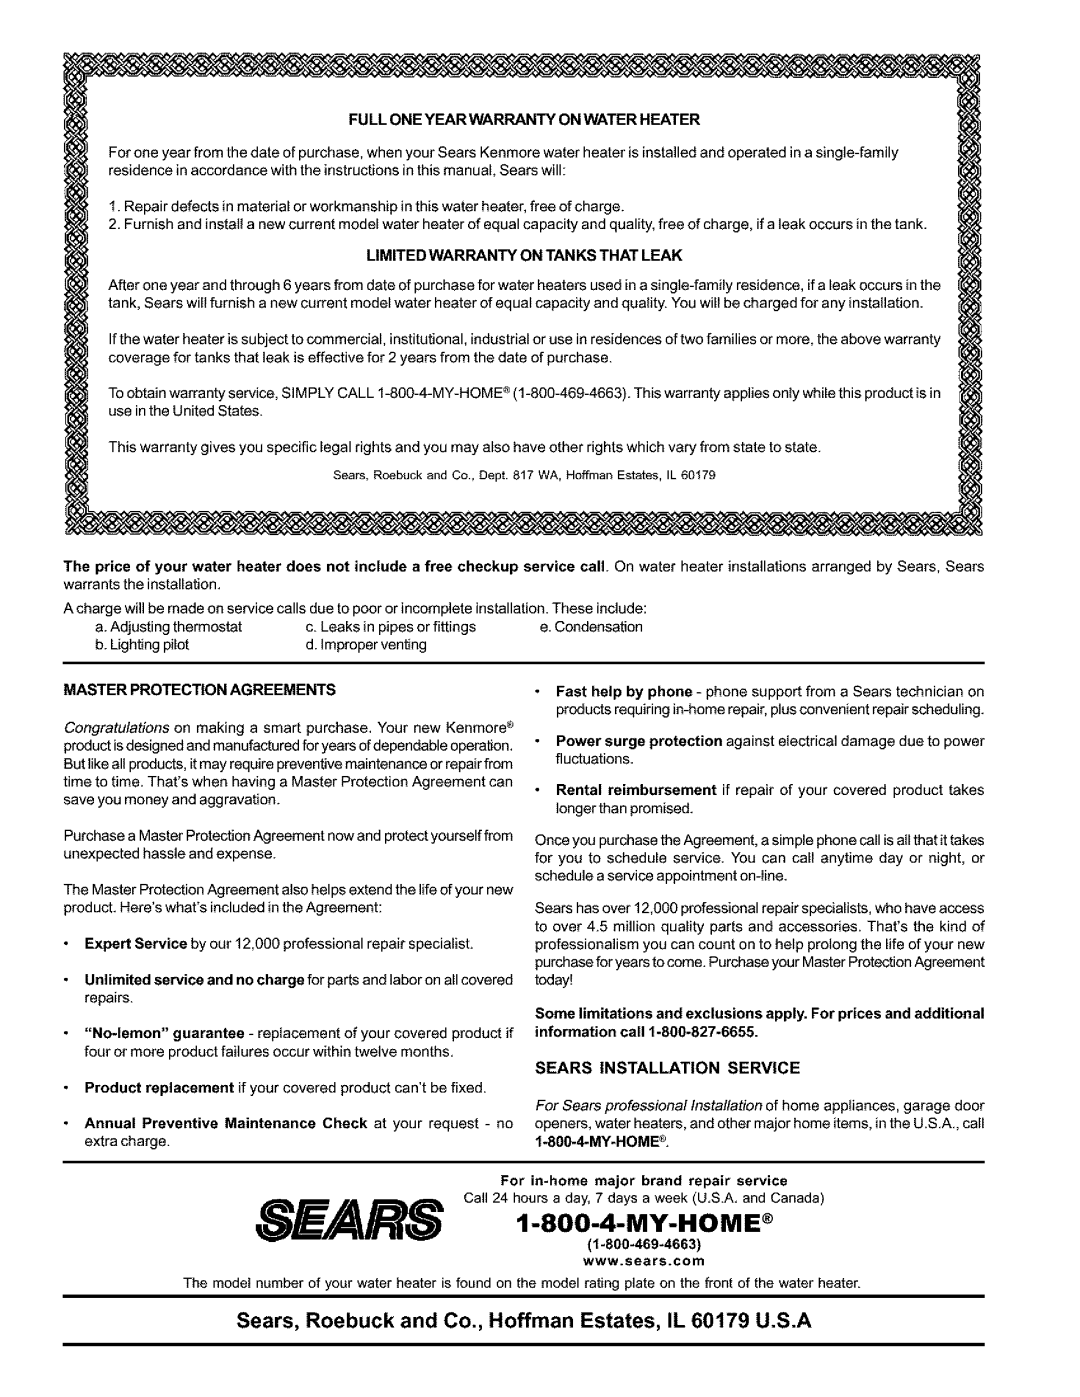 Kenmore 153.333445 Sears Installation Service, Full One Year Warranty On Water Heater, Limited Warranty On Tanks That Leak 